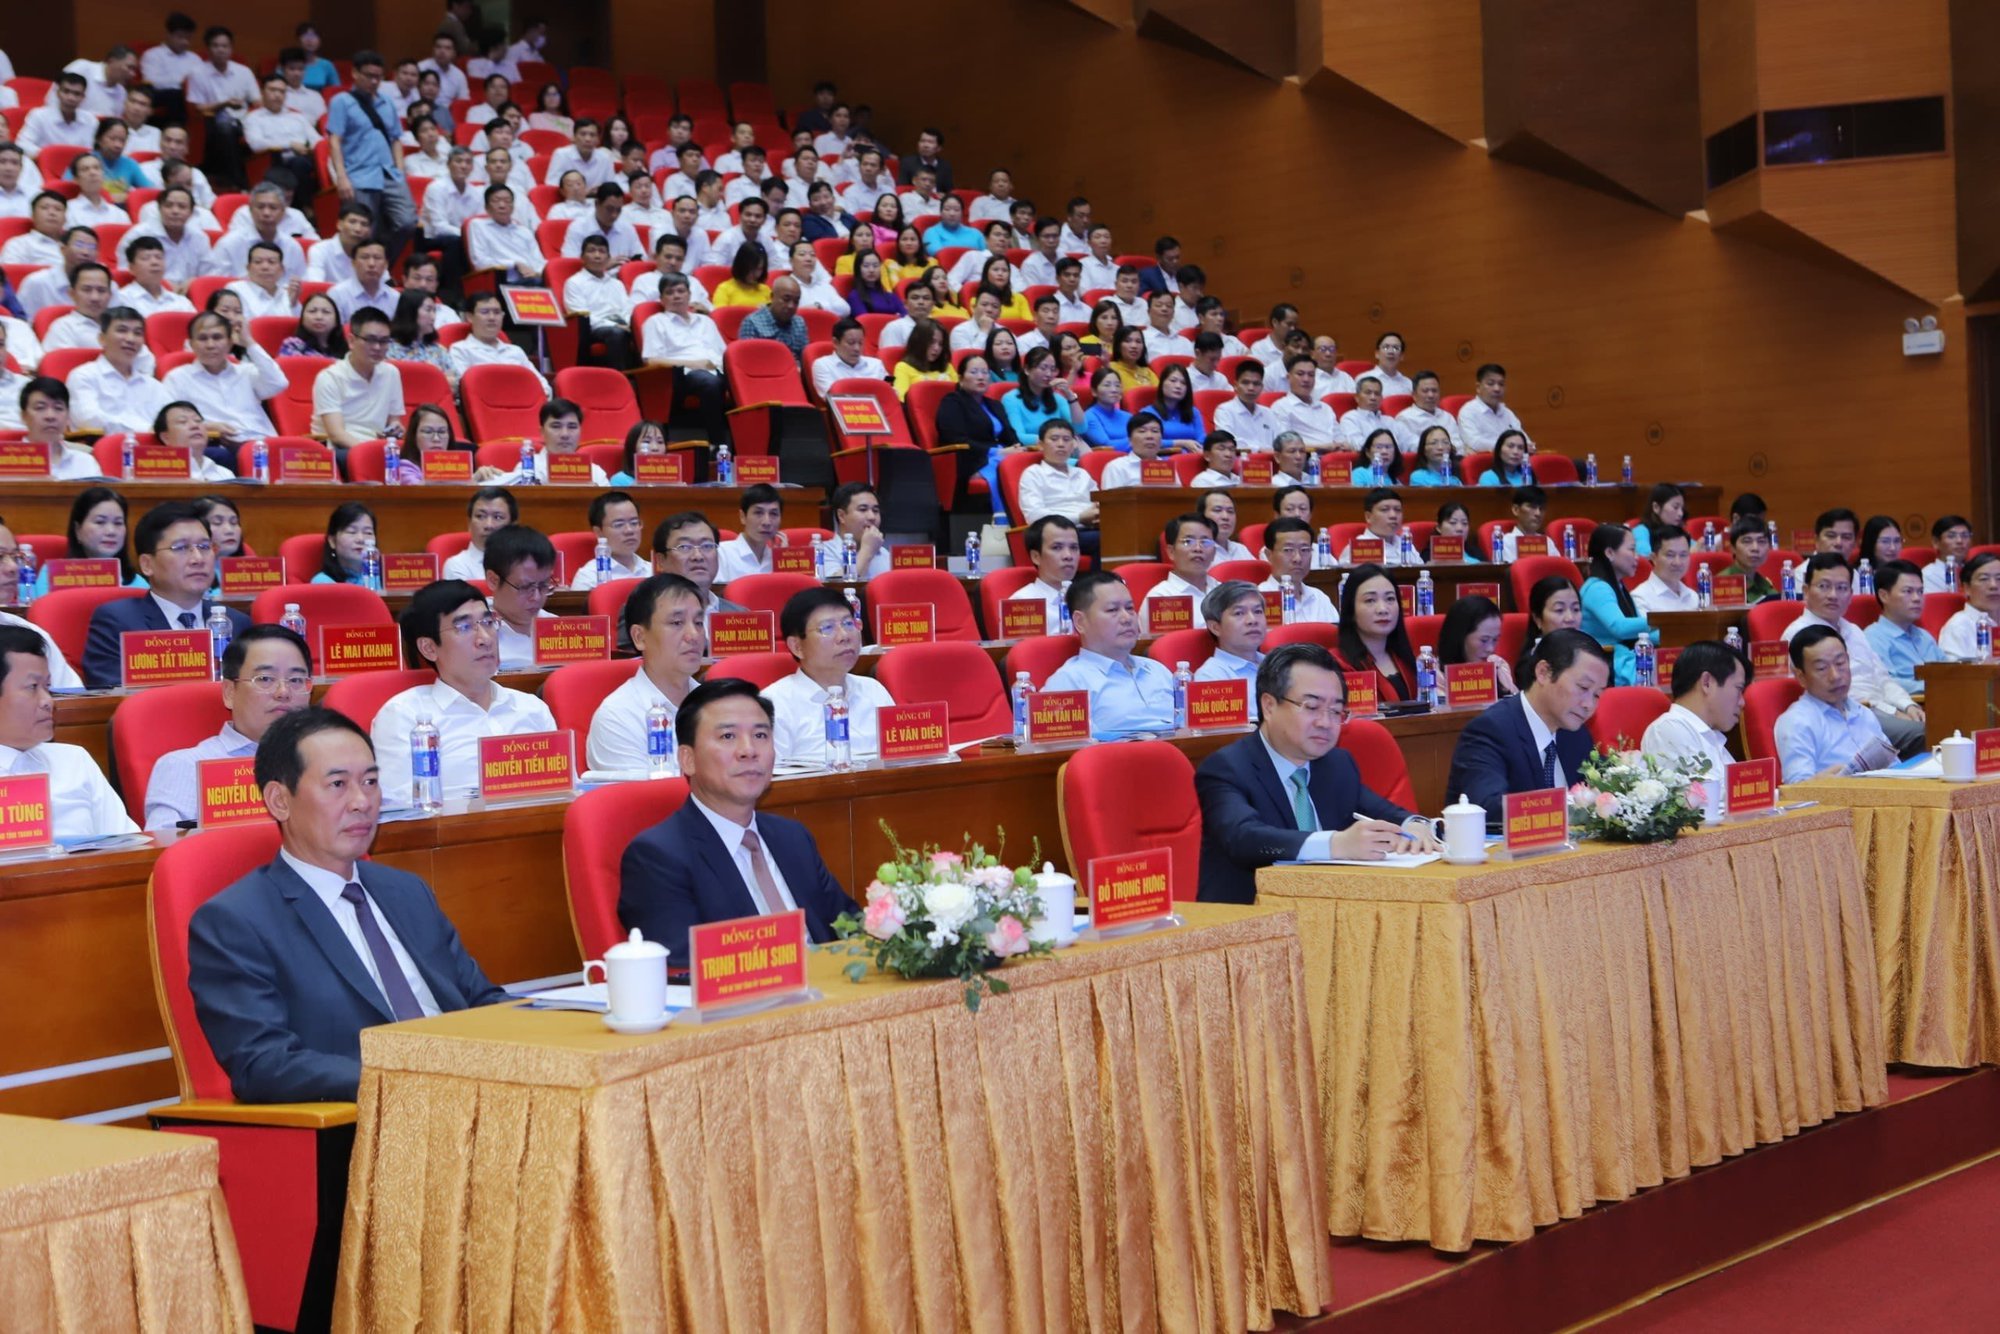 Bài phát biểu của Chủ tịch UBND tỉnh tại Hội nghị công bố quy hoạch chung đô thị Thanh Hóa, tỉnh Thanh Hóa đến năm 2040 - Ảnh 12.